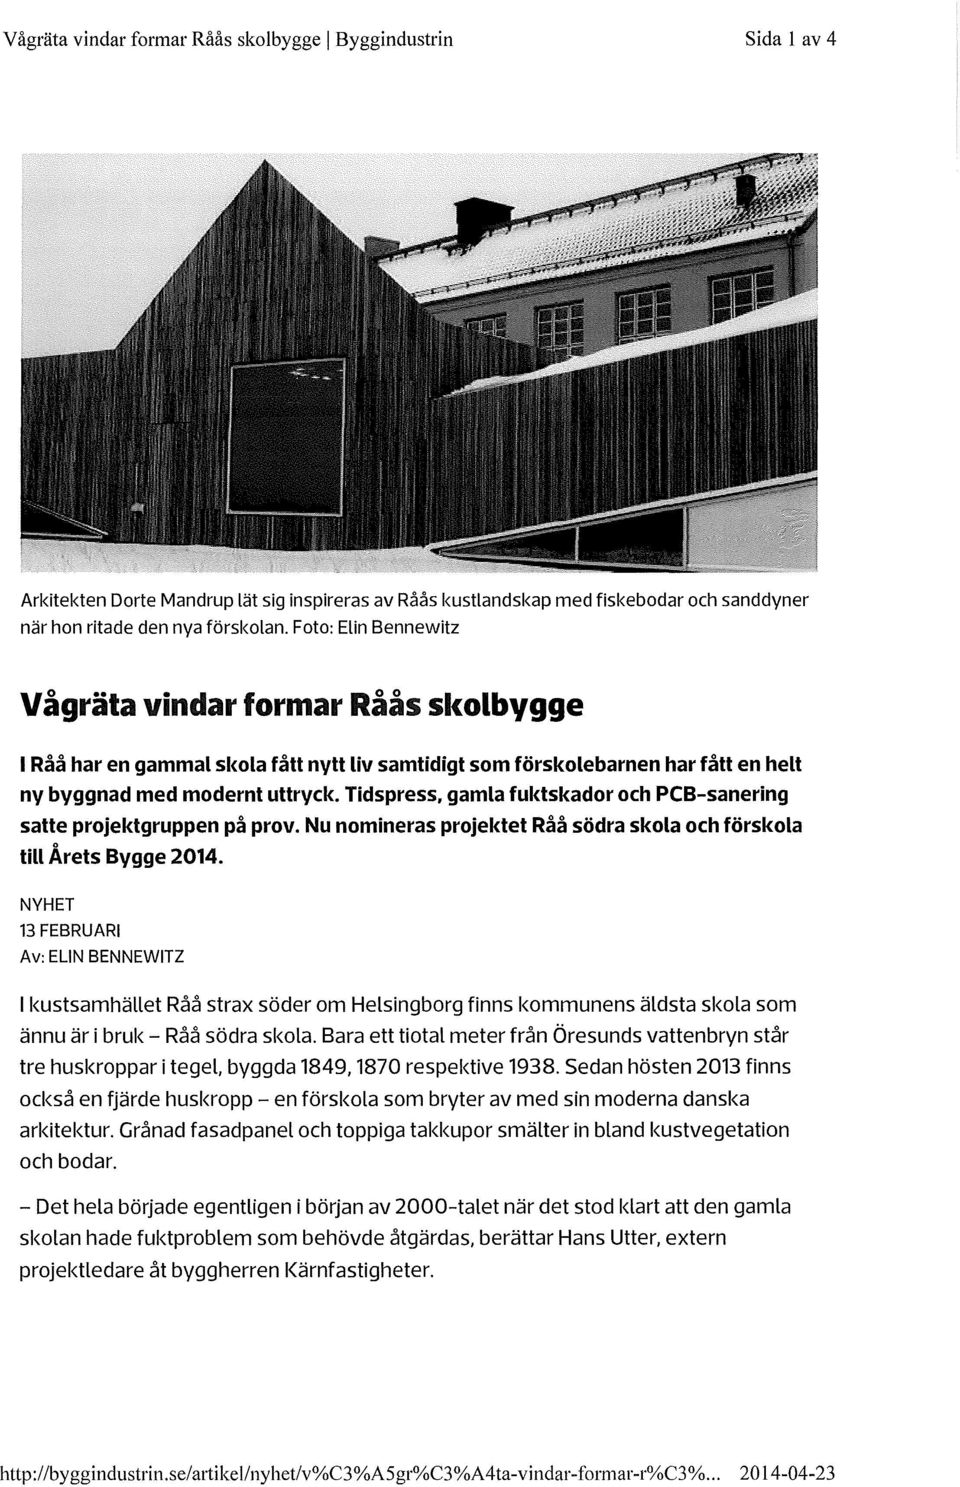 Tidspress, gamla fuktskador och PCB-sanering satte projektgruppen på prov. Nu nomineras projektet Råå södra skola och förskola till Årets Bygge 2014.